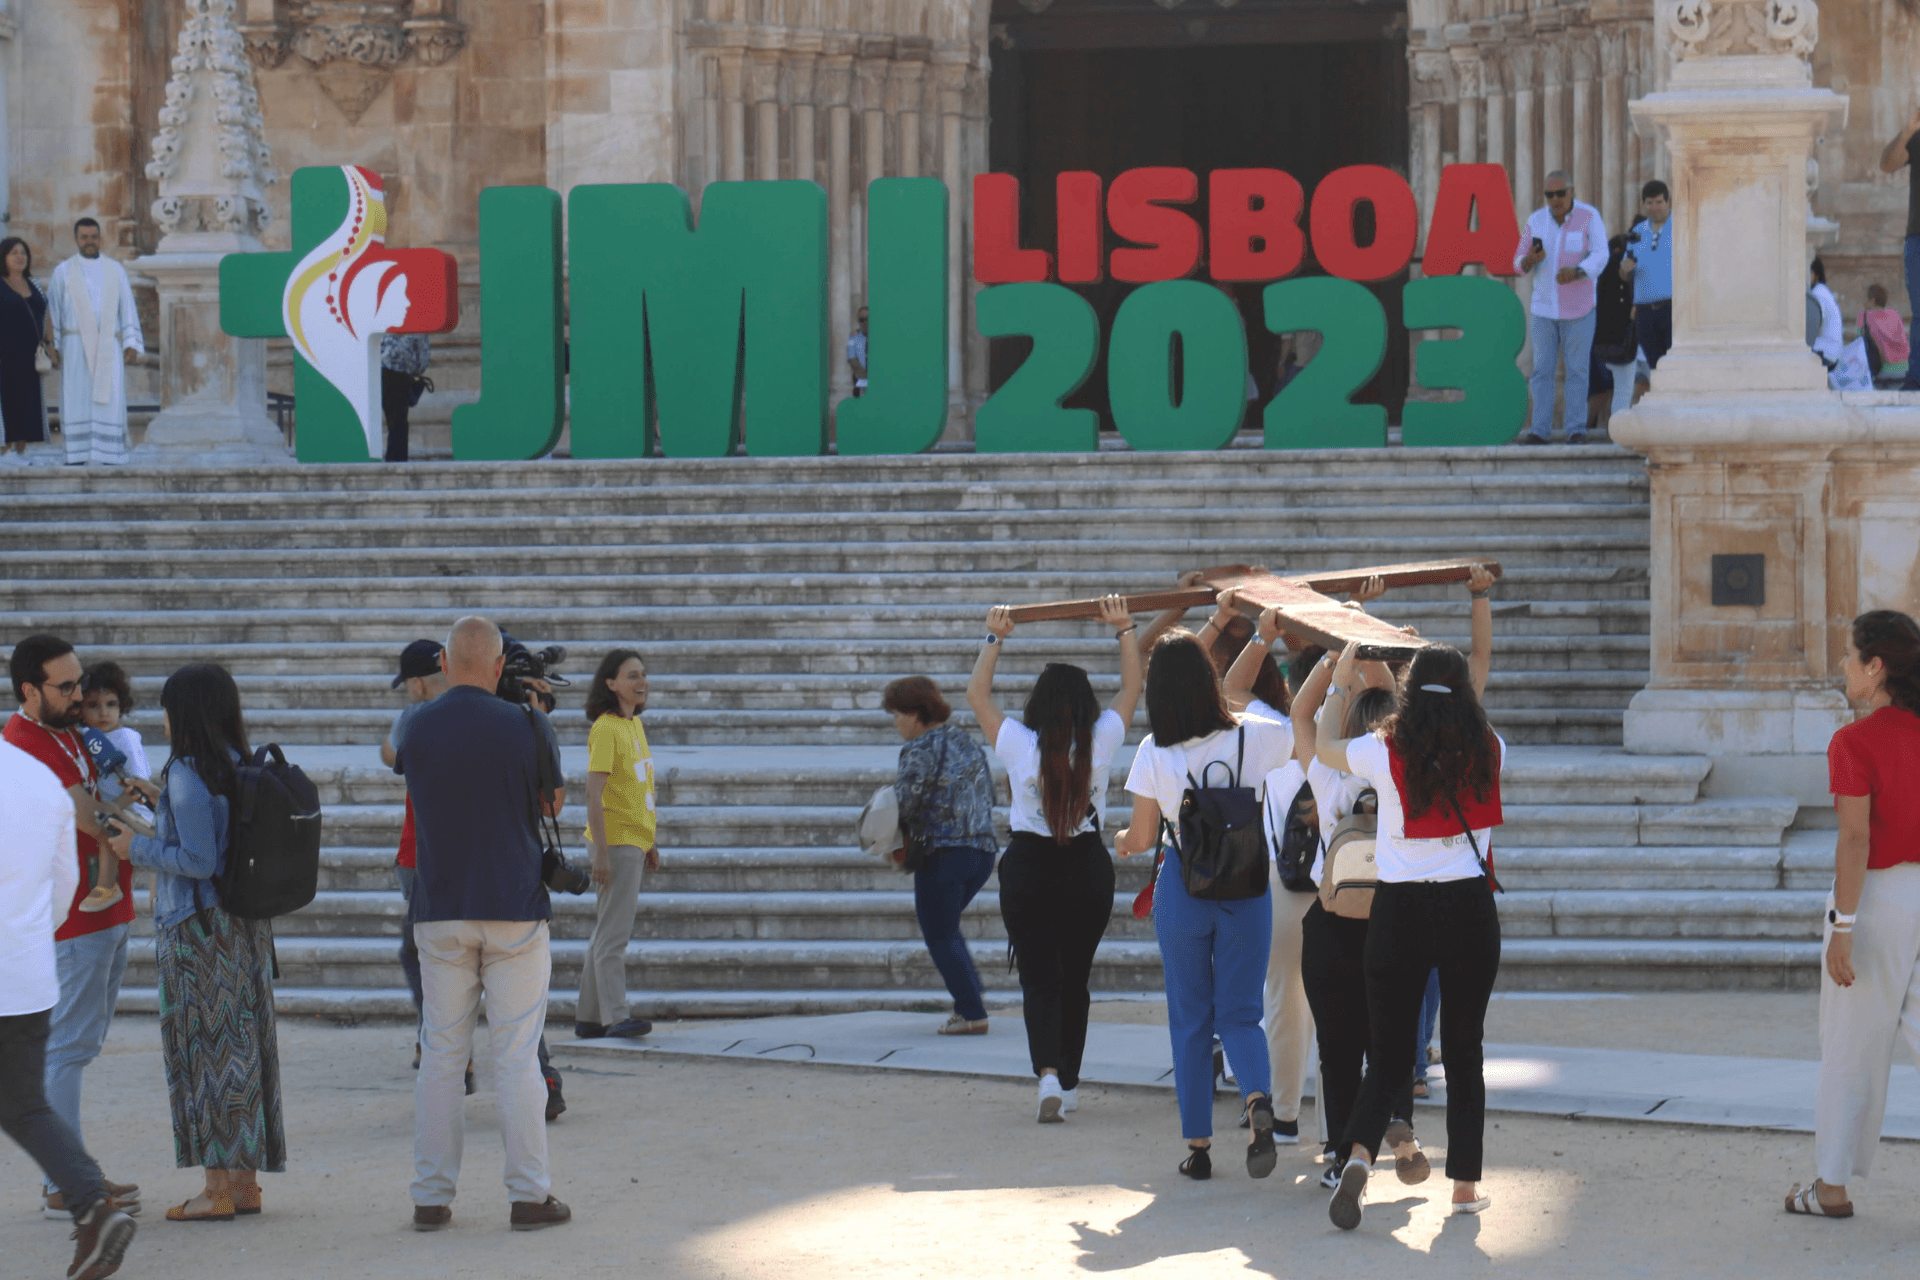 Imagen destacada del artículo: Peregrinación de los Símbolos y Días en las Diócesis prepara a los jóvenes para la JMJ Lisboa 2023